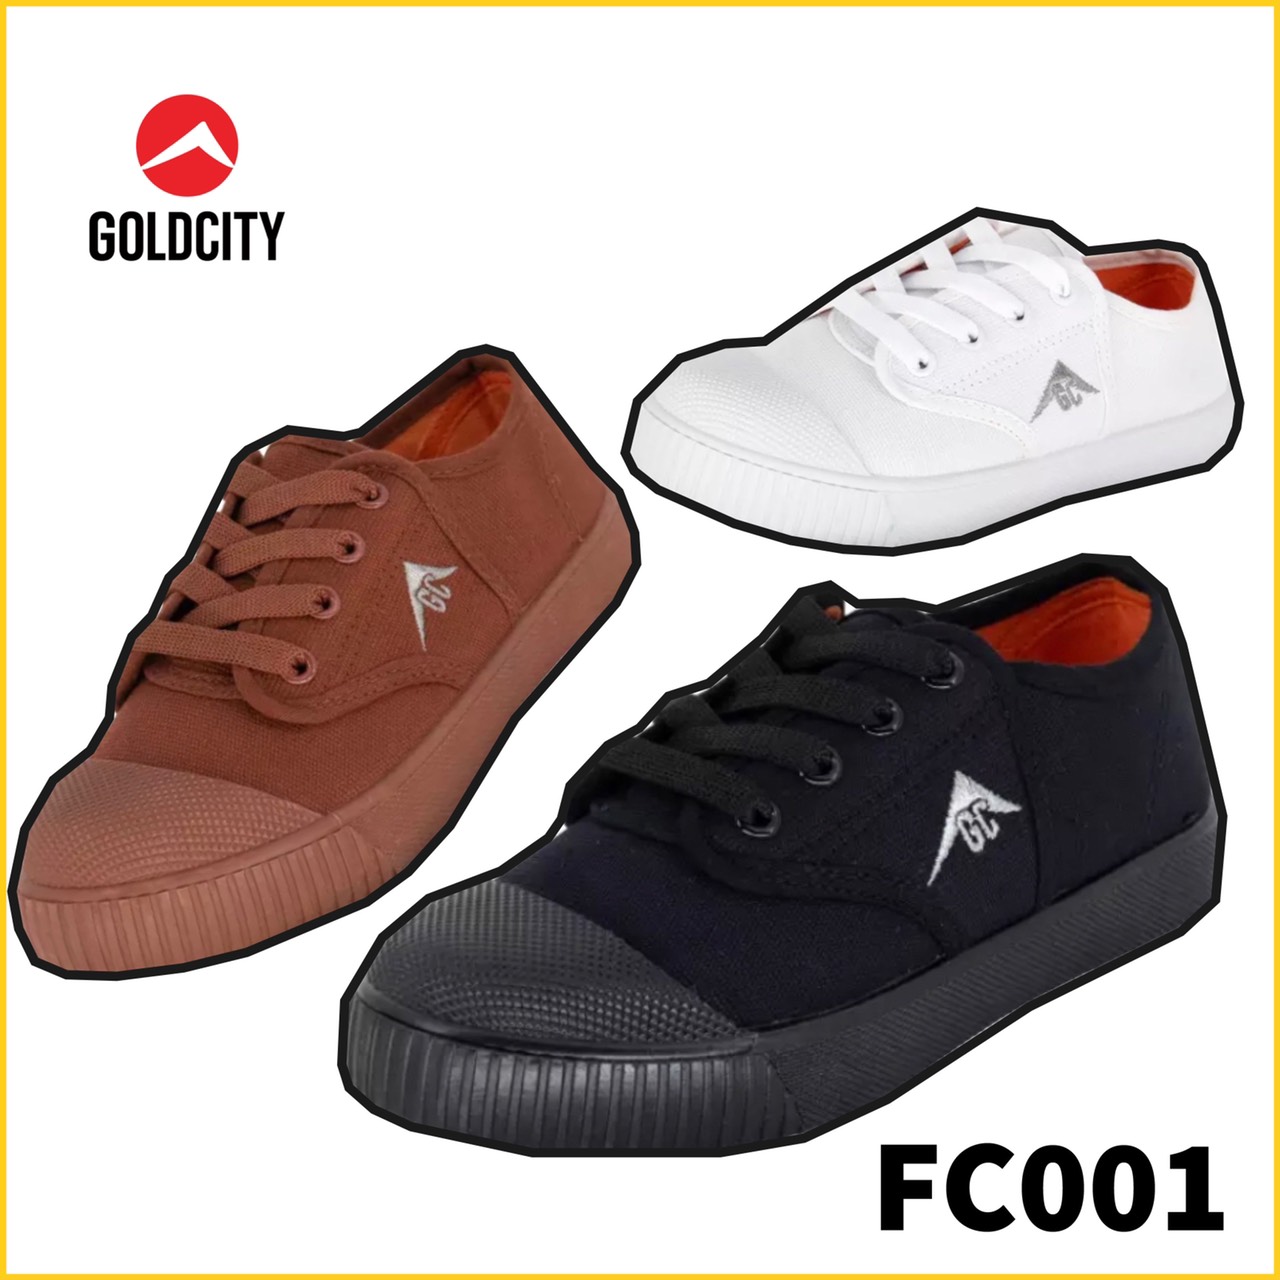 GOLDCITY รองเท้านักเรียน รองเท้าผ้าใบนักเรียน รองเท้านักเรียนไซส์เล็ก โกลด์ซิตี้ รุ่น FC001